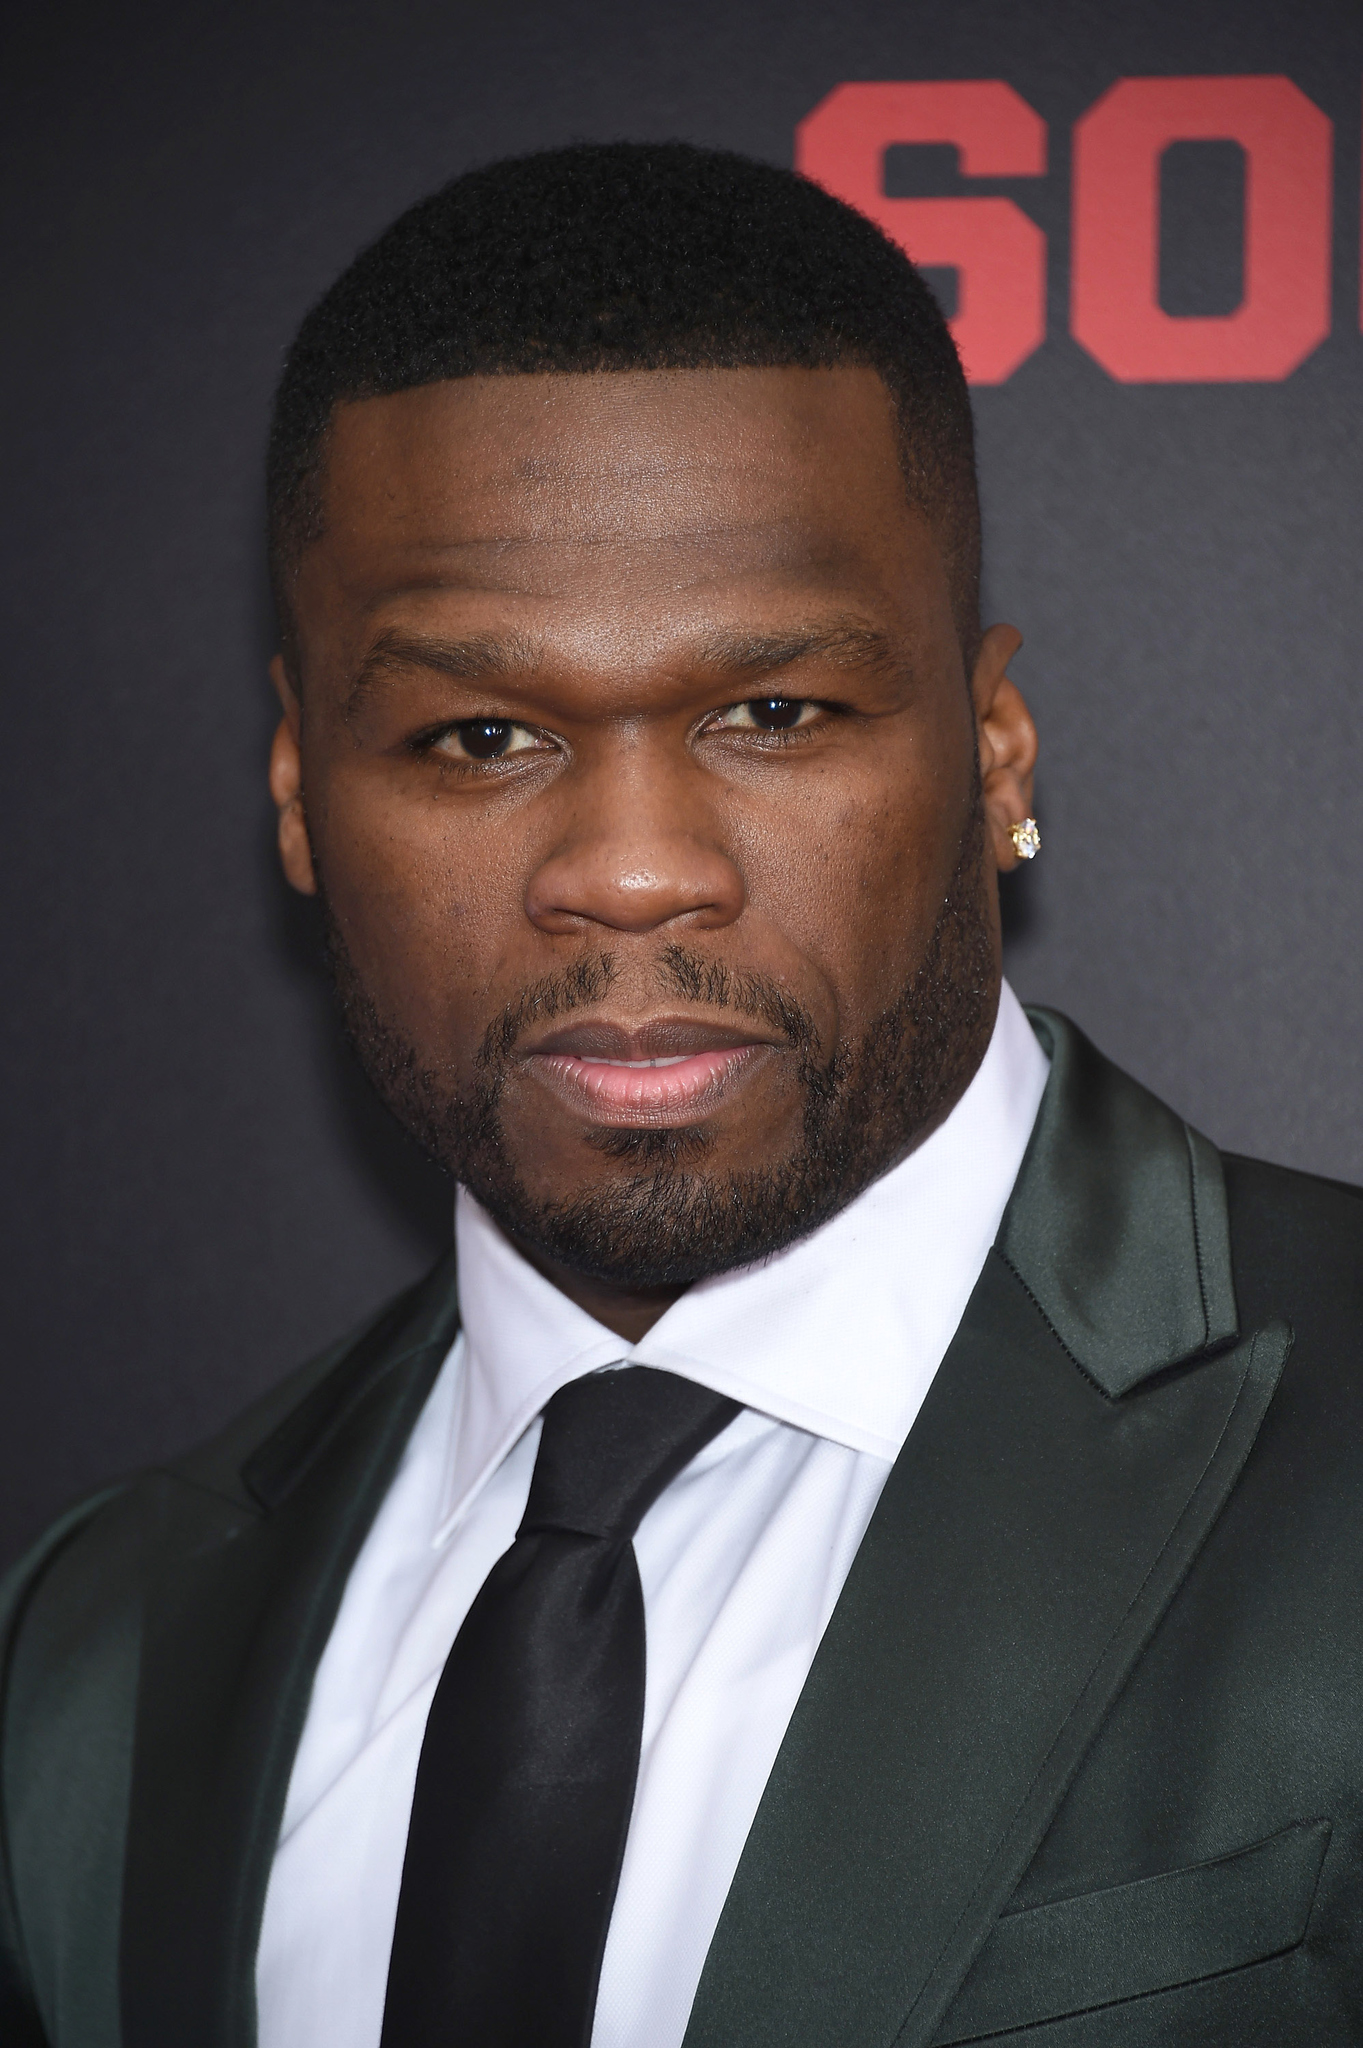  Biografia de 50 Cent